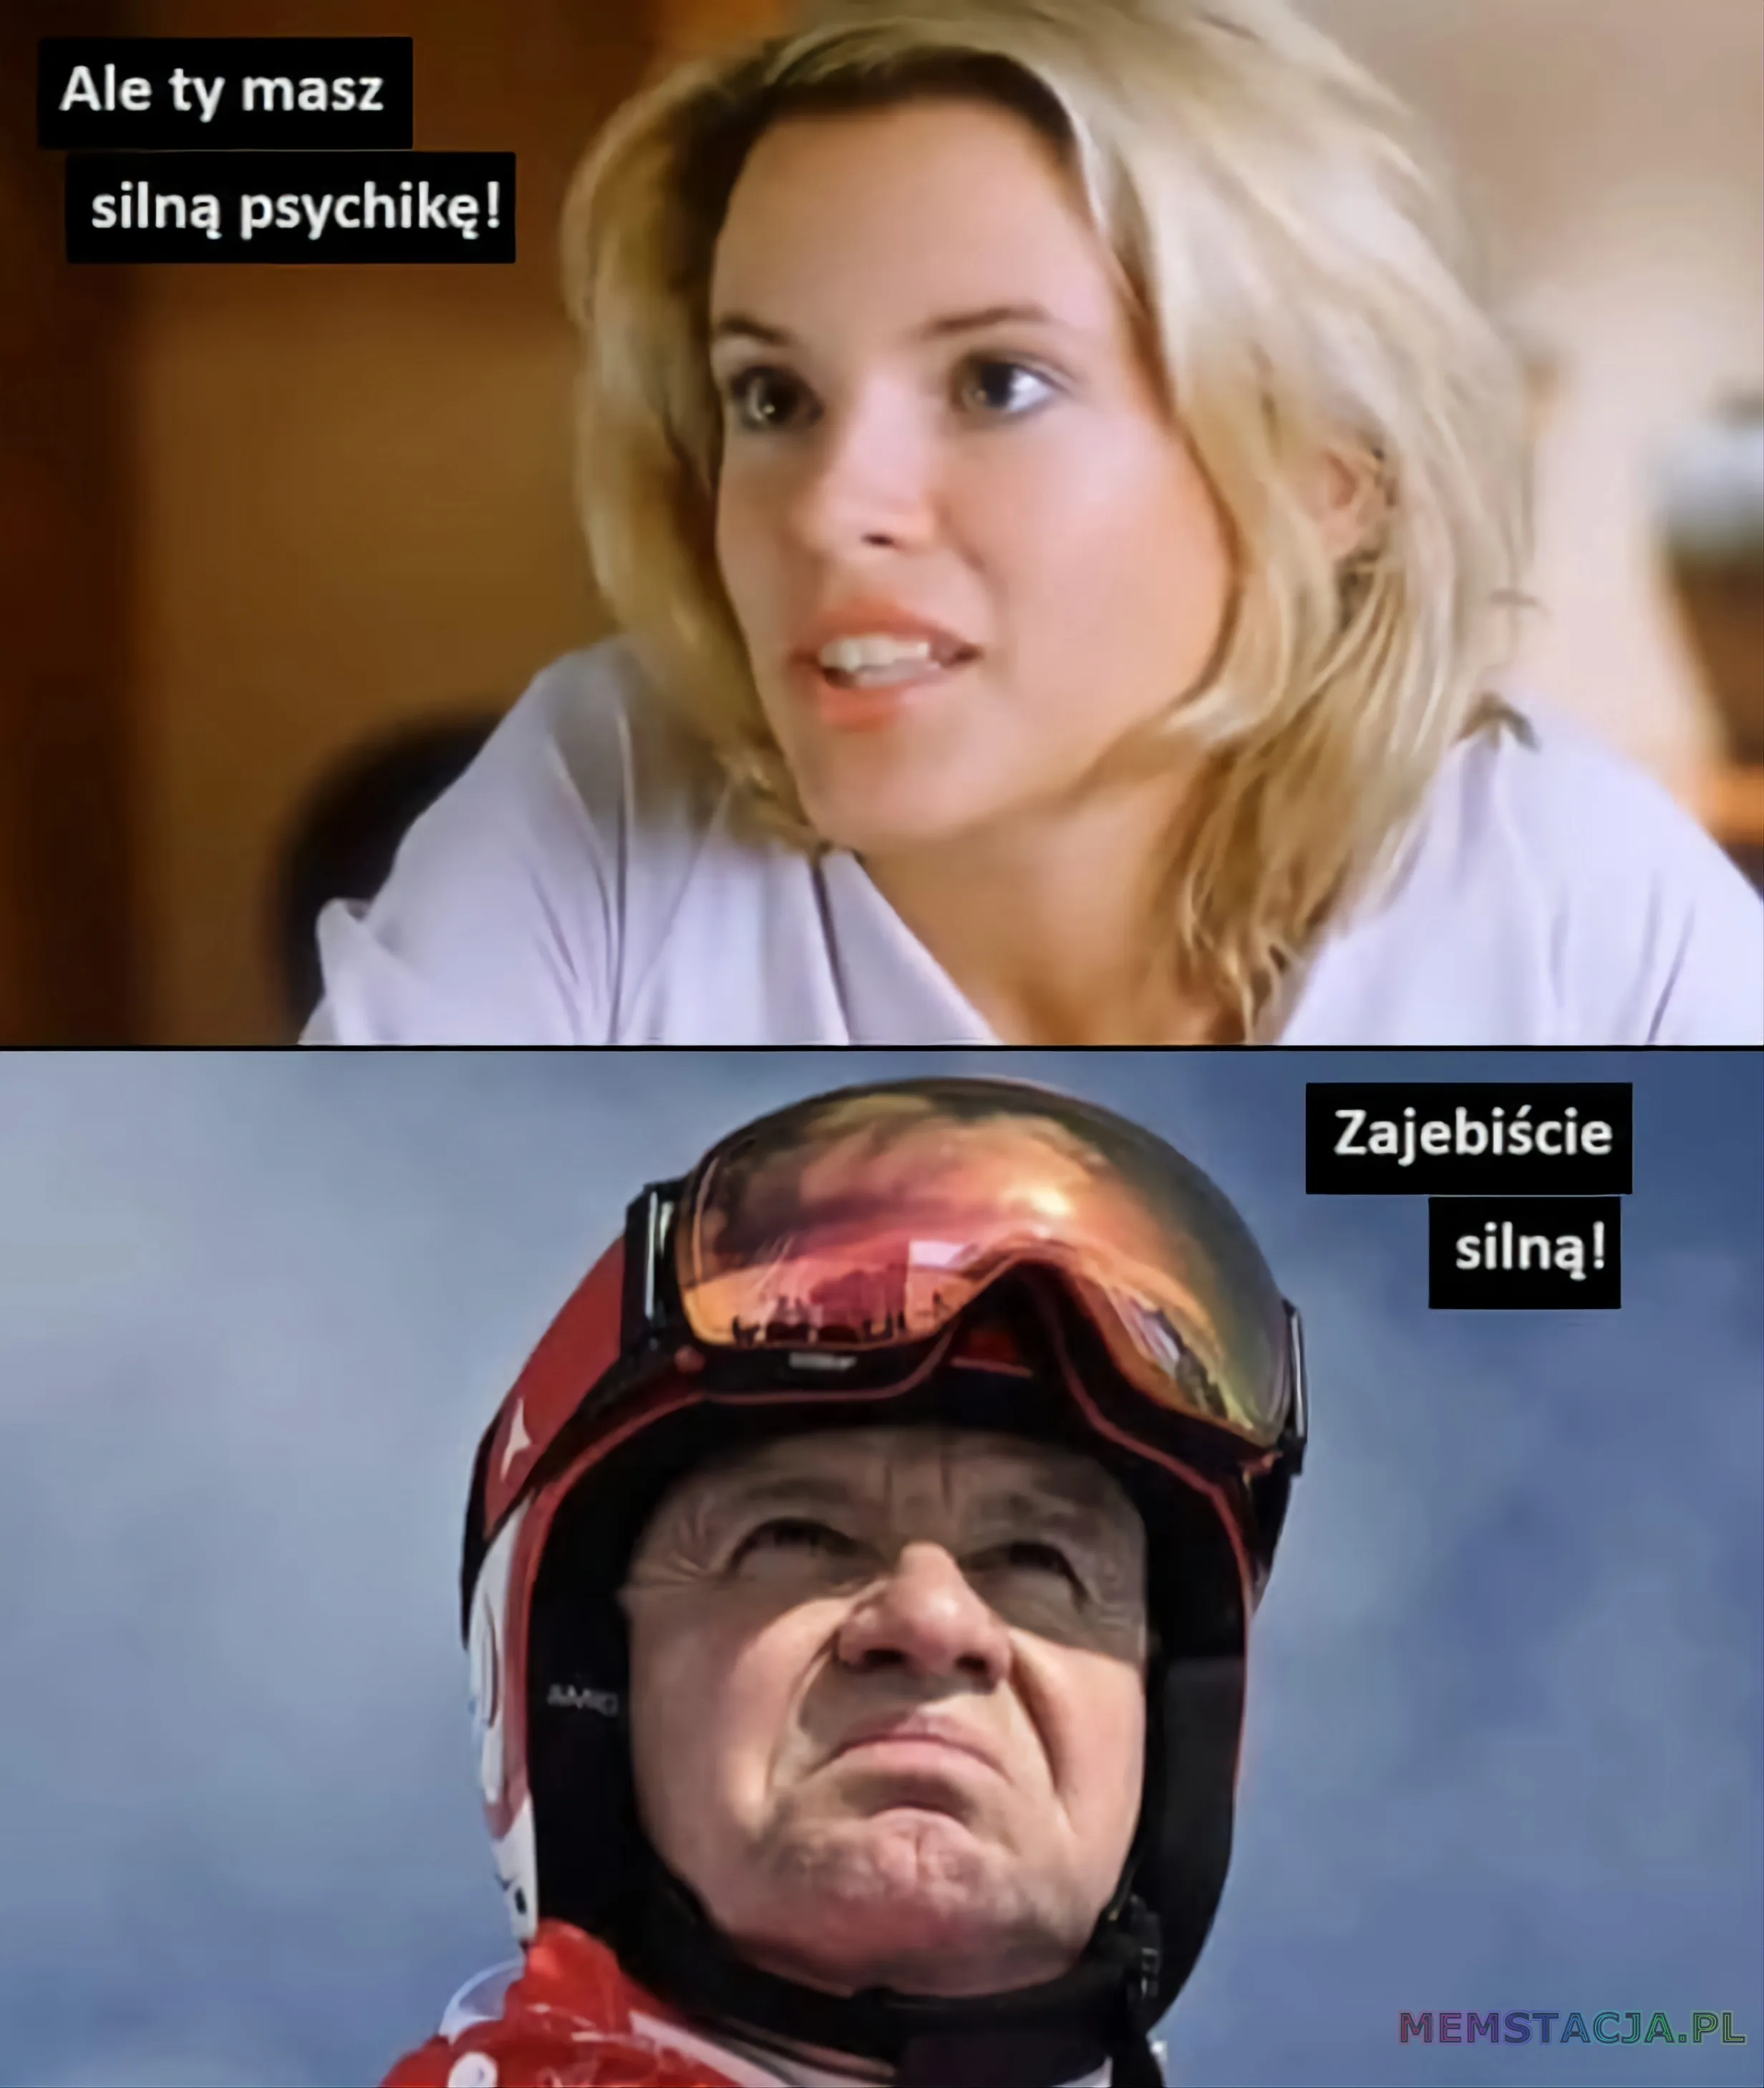 Mem przedstawiający postać kobiety, która mówi: 'Ale ty masz silną psychikę!' oraz postać Prezydenta Andrzeja Dudy odpowiadającego: 'Zajebiście silną!'